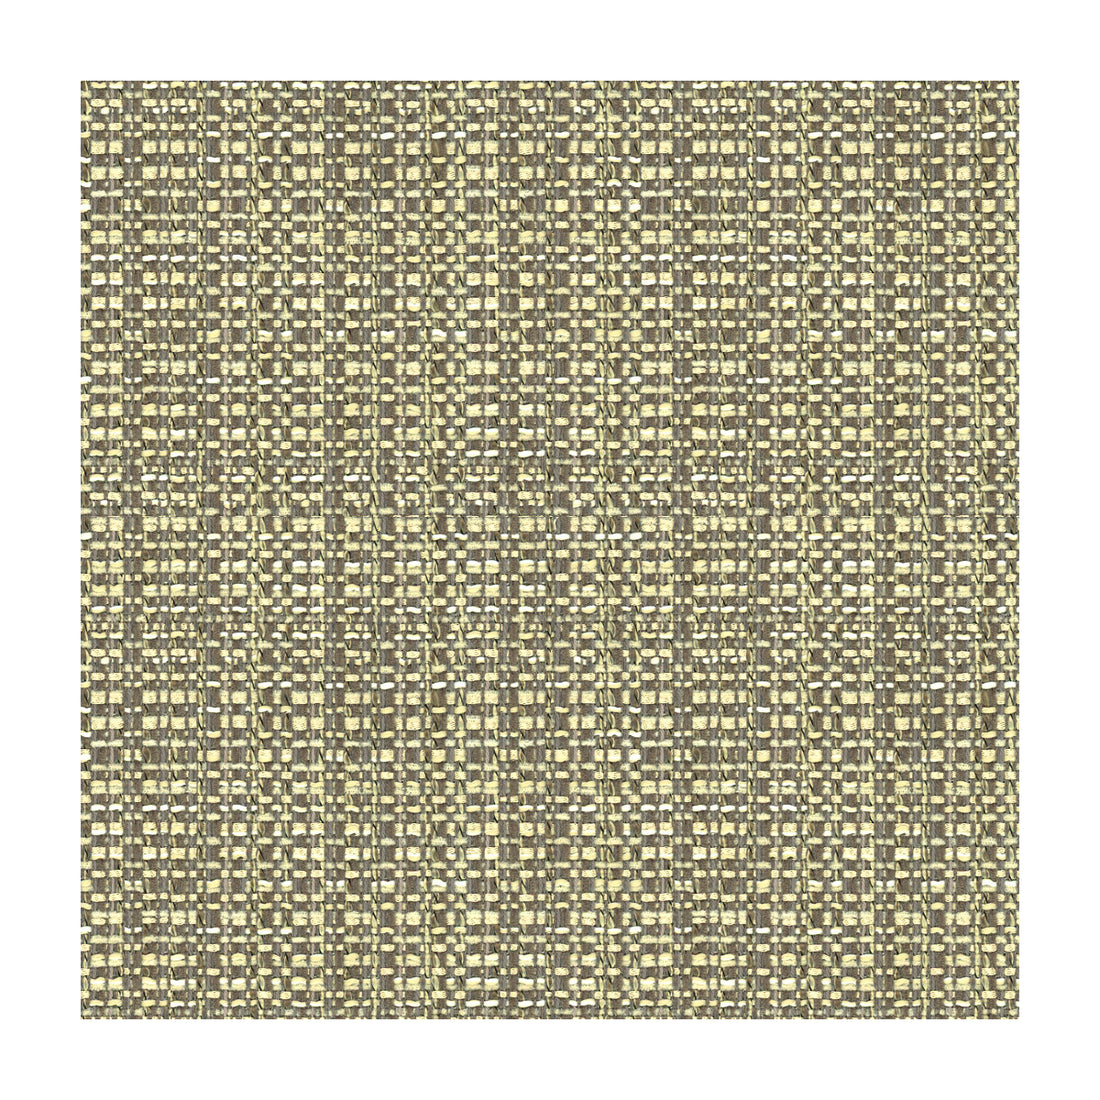 Kravet Design fabric in 34210-1121 color - pattern 34210.1121.0 - by Kravet Design